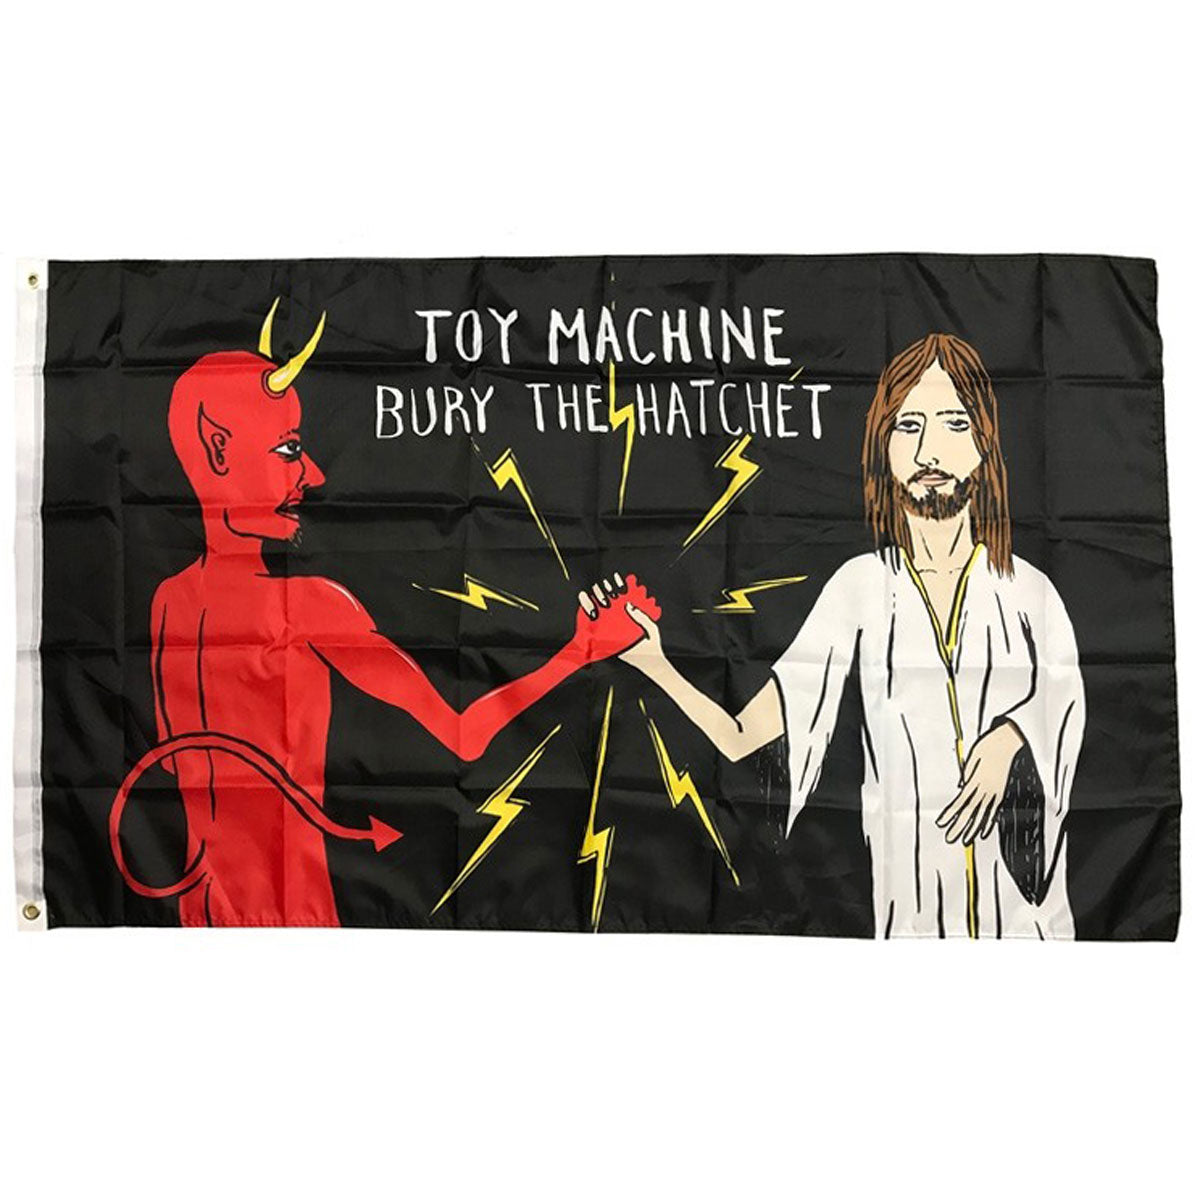 Toy Machine Bury The Hatchet Flag - Multi image 1